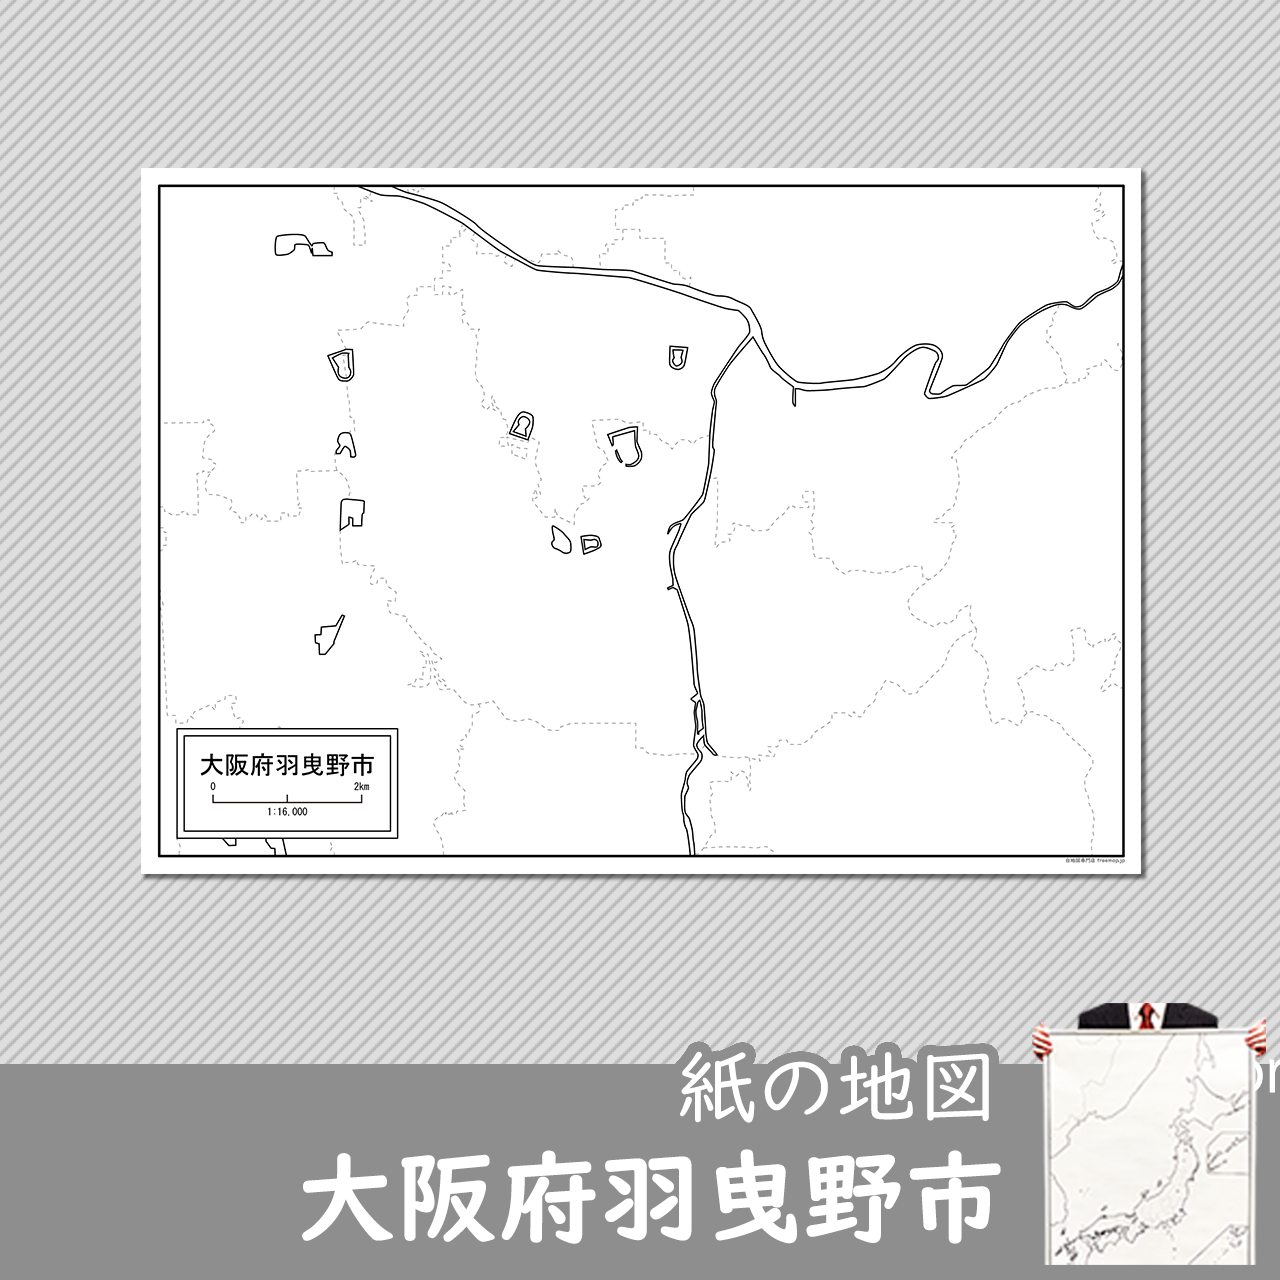 羽曳野市の紙の白地図のサムネイル